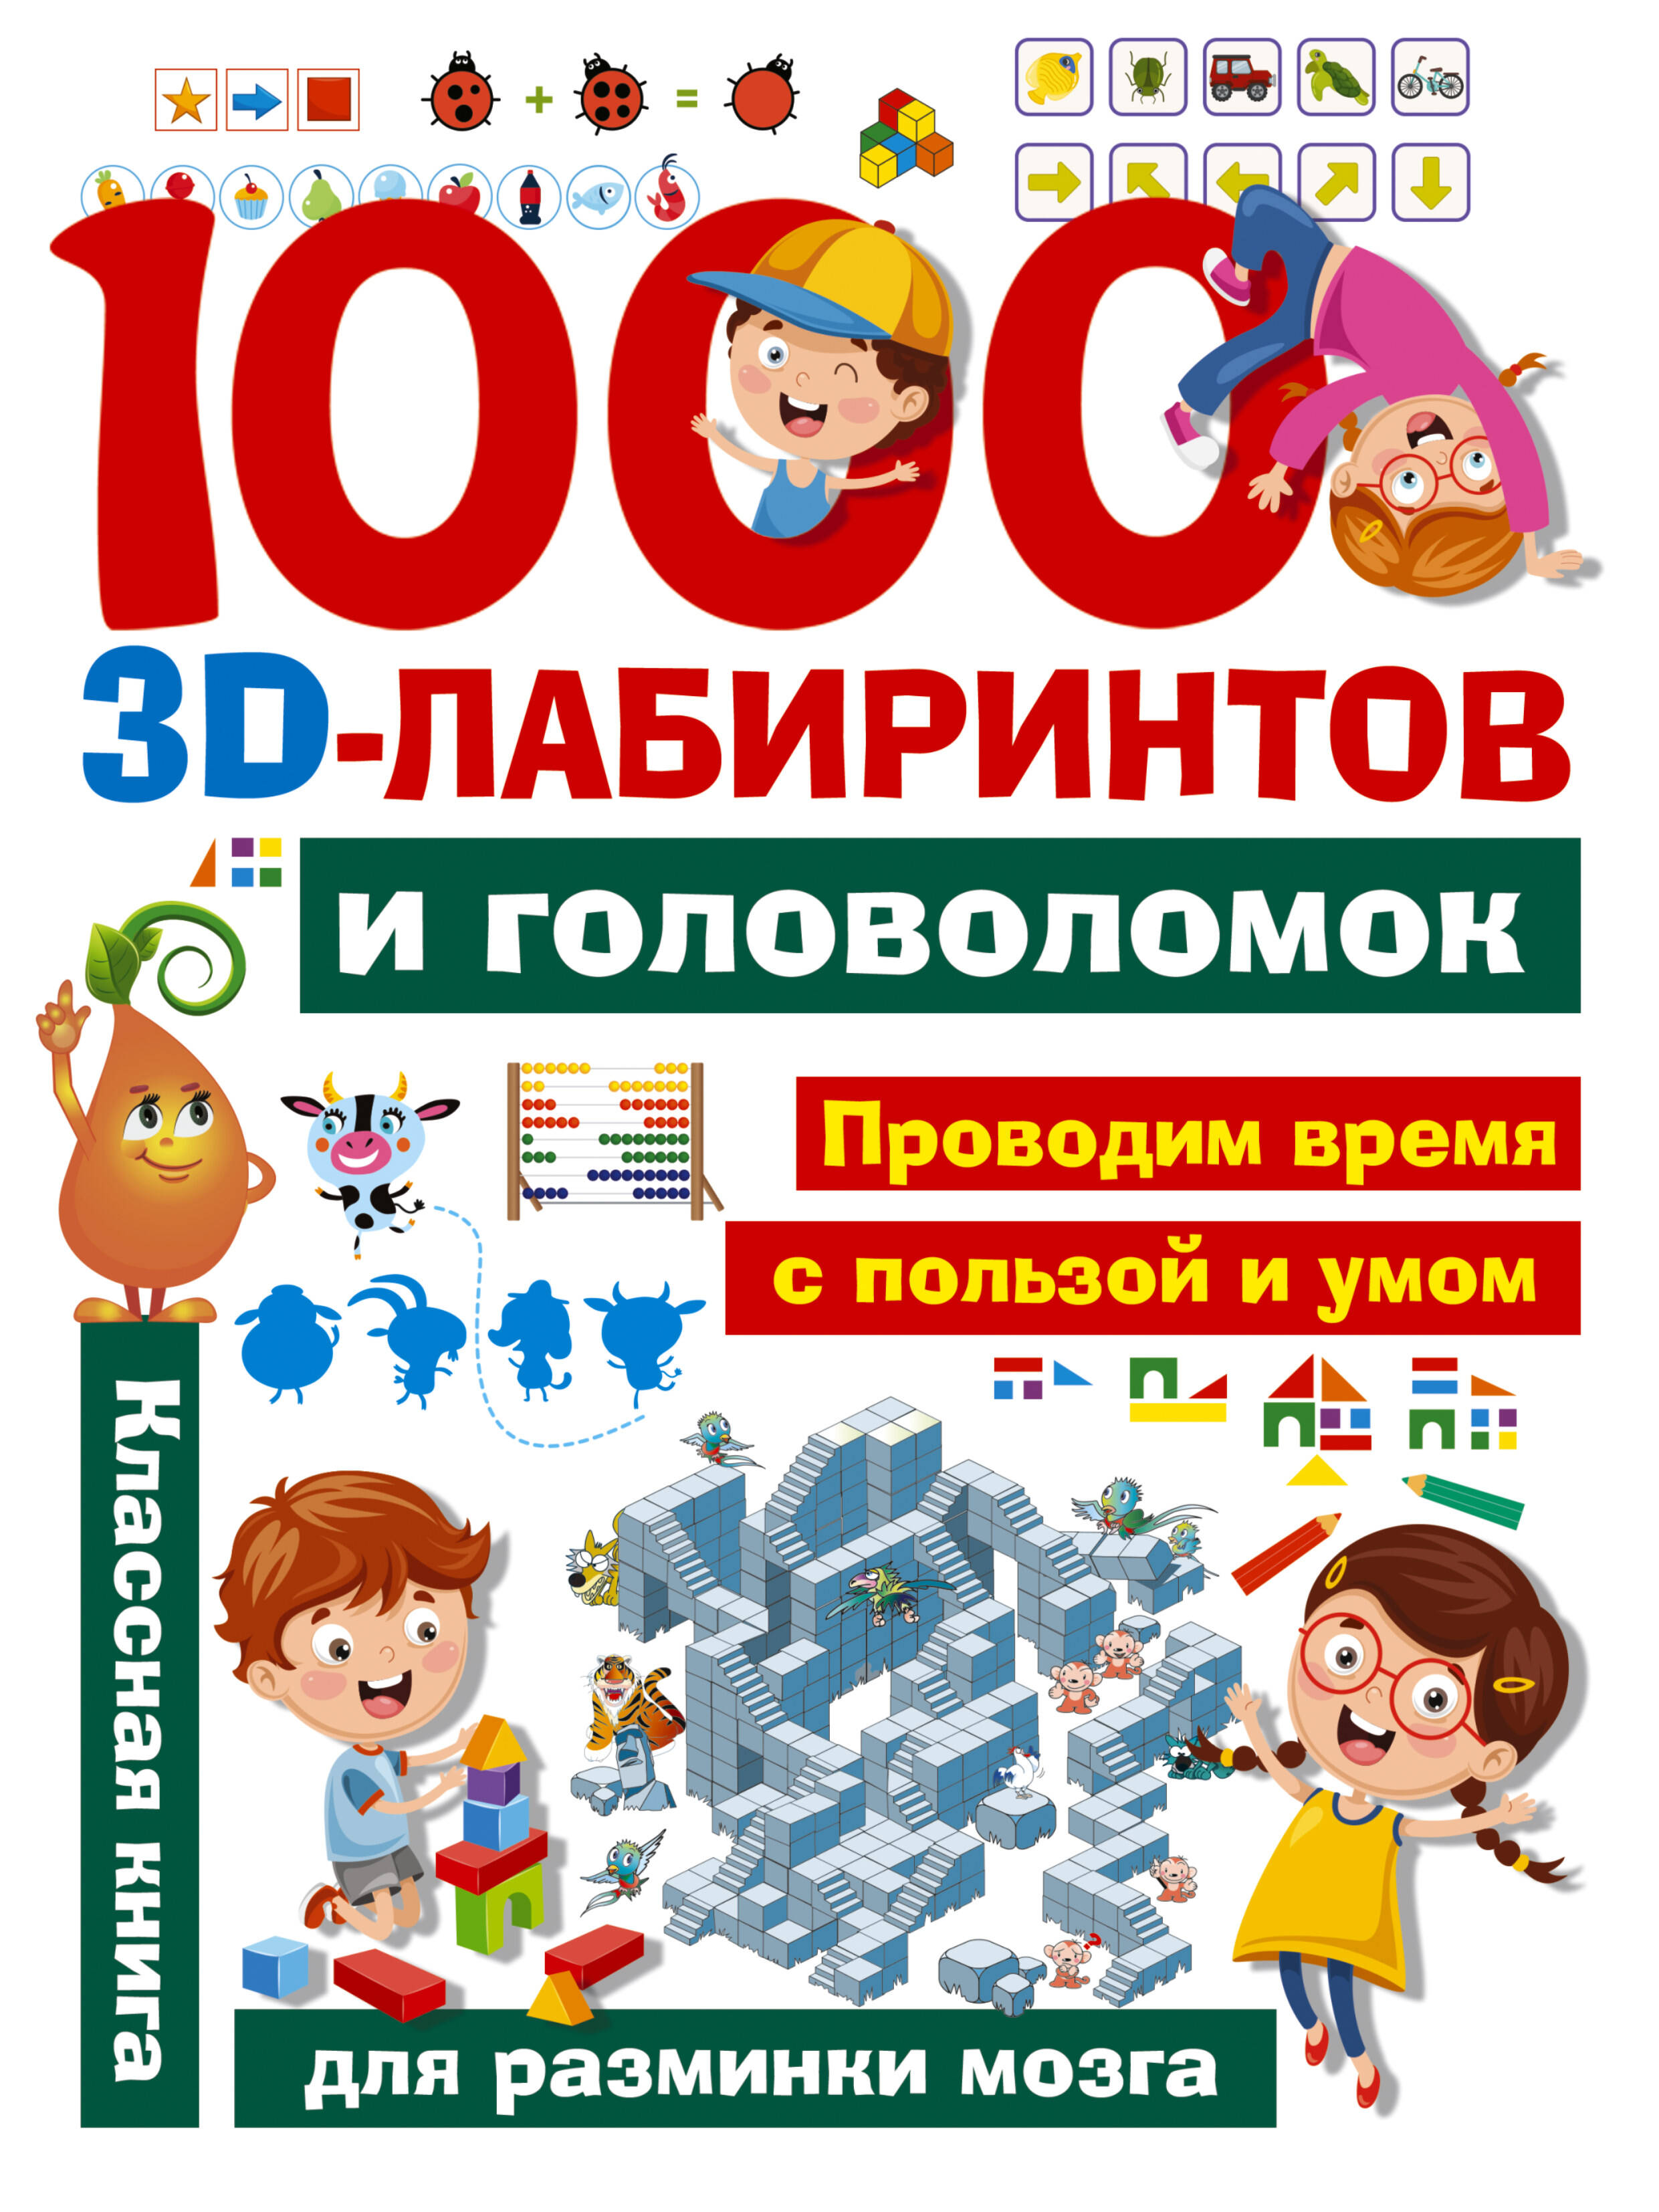 Третьякова Алеся Игоревна 1000 занимательных 3D-лабиринтов и головоломок